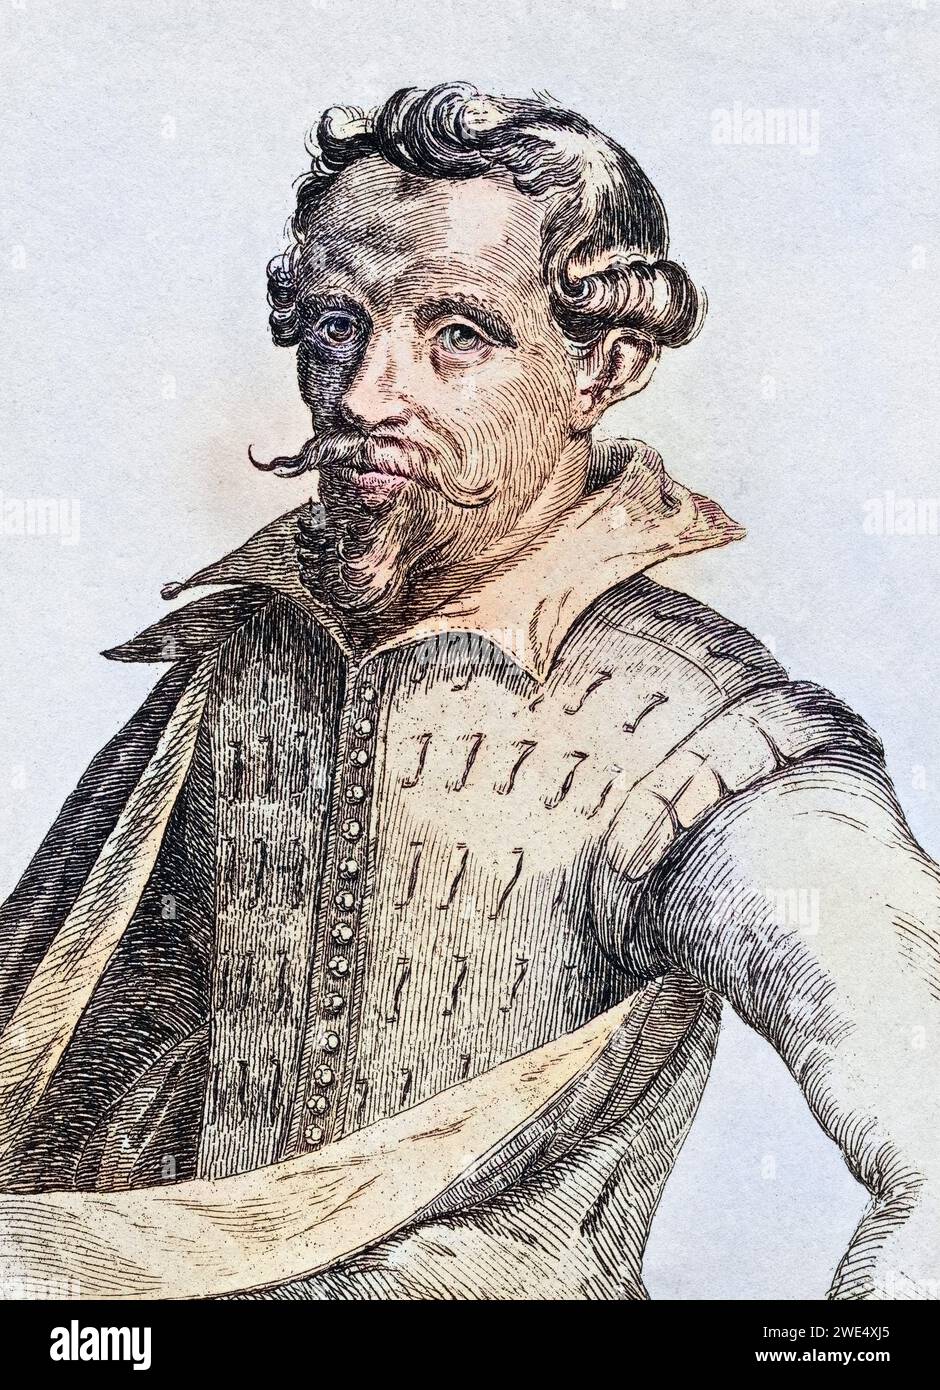 Hendrick Cornelisz Vroom 1566-1640 holländischer Künstler, Historisch, digital restaurierte Reproduktion von einer Vorlage aus dem 19. Jahrhundert, Record date not stated Stock Photo